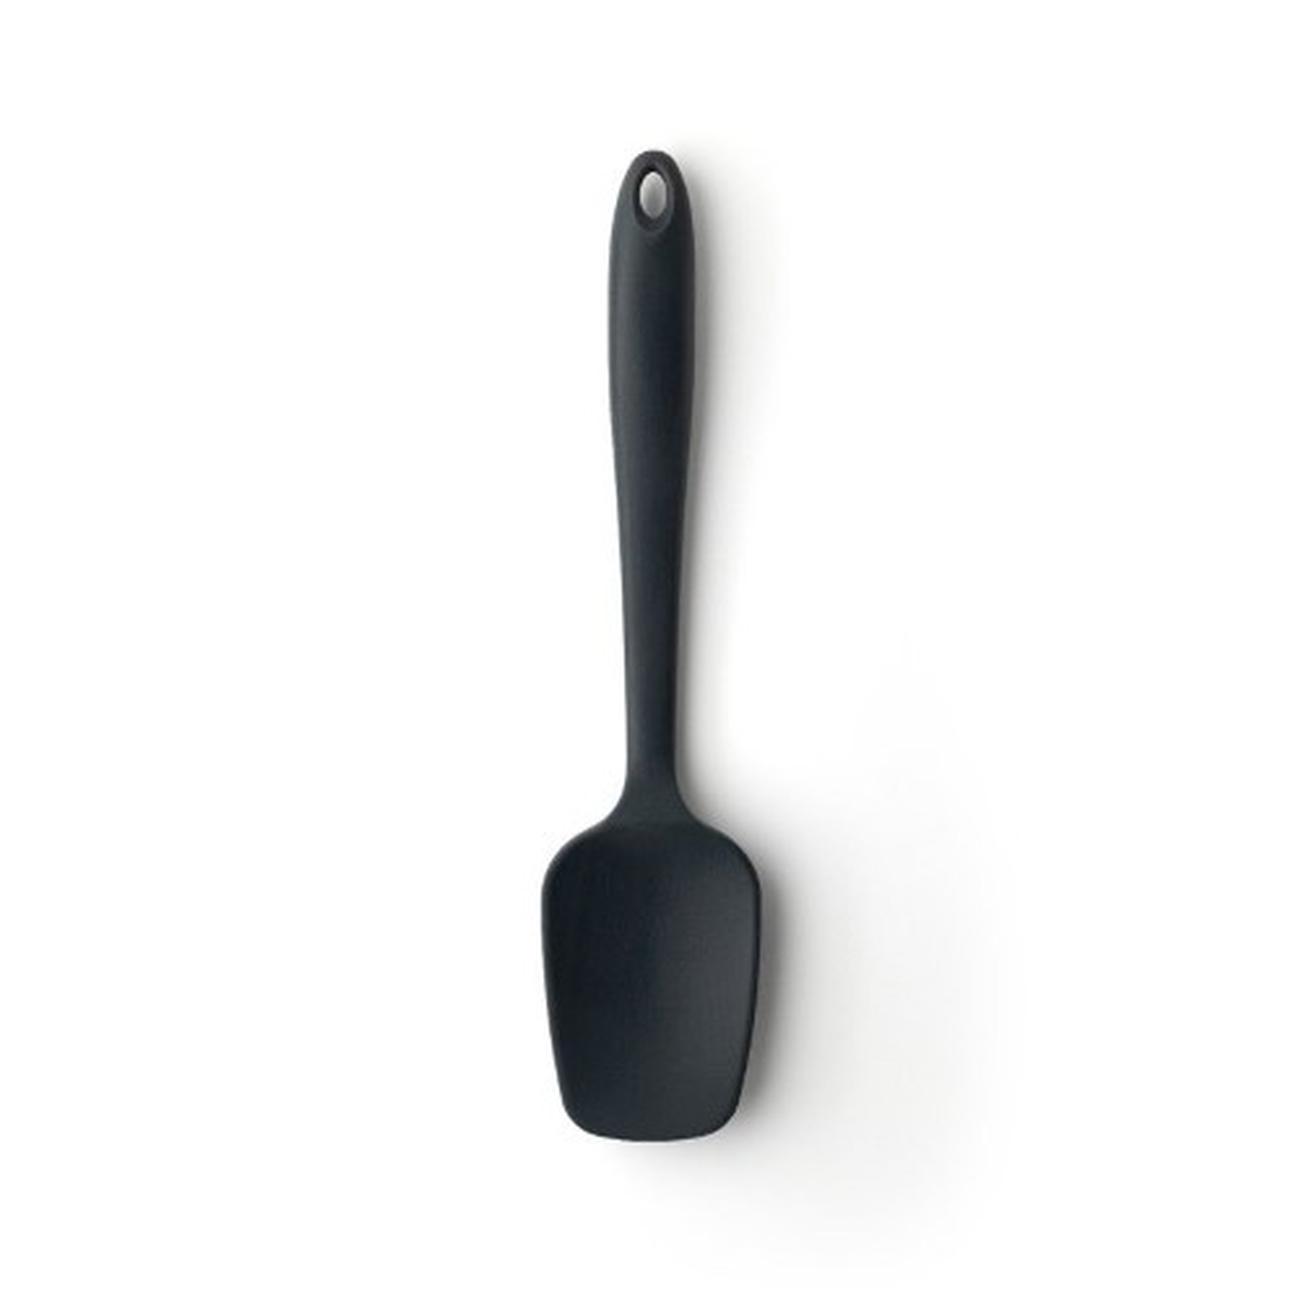 te-graphite-silicone-spatula-spoon - Taylor's Eye Witness Graphite Silicone Spatula Spoon